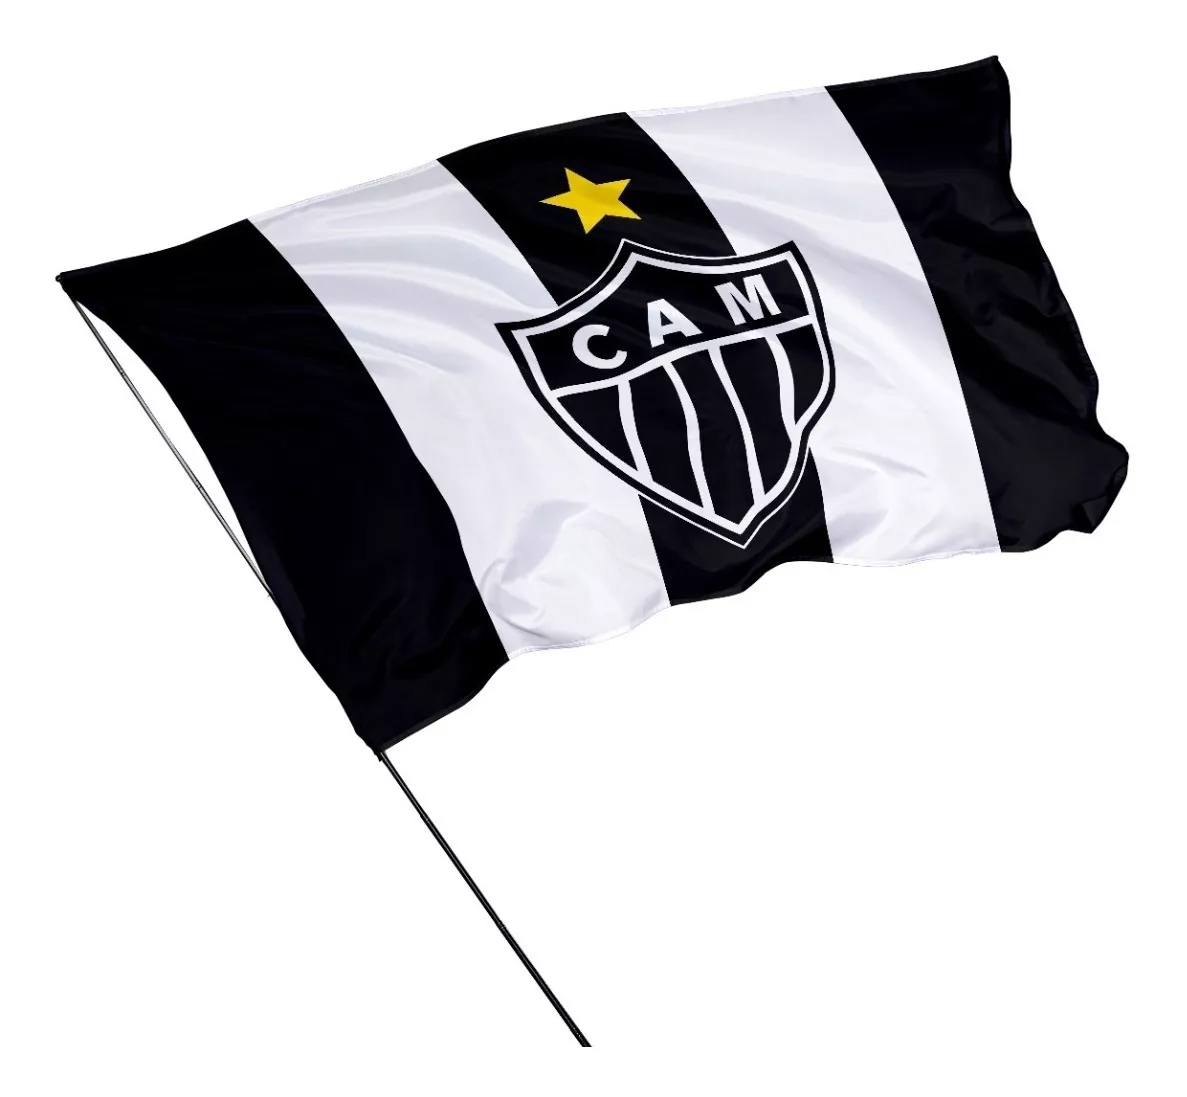 Bandeira Do Atlético Mineiro 1,50m X 1m   -  At01